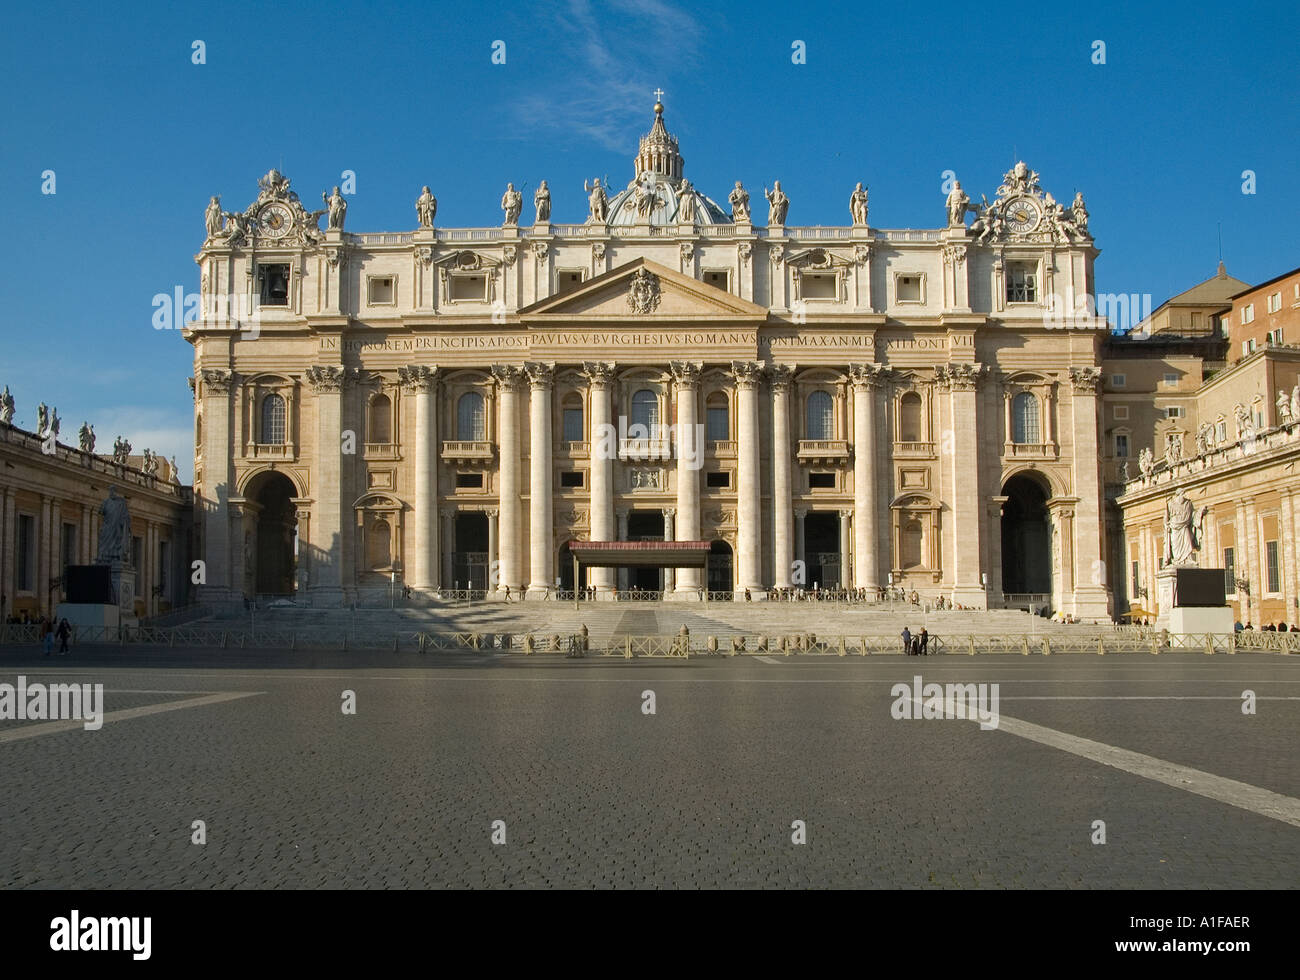 Blick von der Piazza San Pietro auf die päpstliche Basilika St. Peter oder den Petersdom, erbaut im Renaissance-Stil im Vatikan Rom Italien Stockfoto